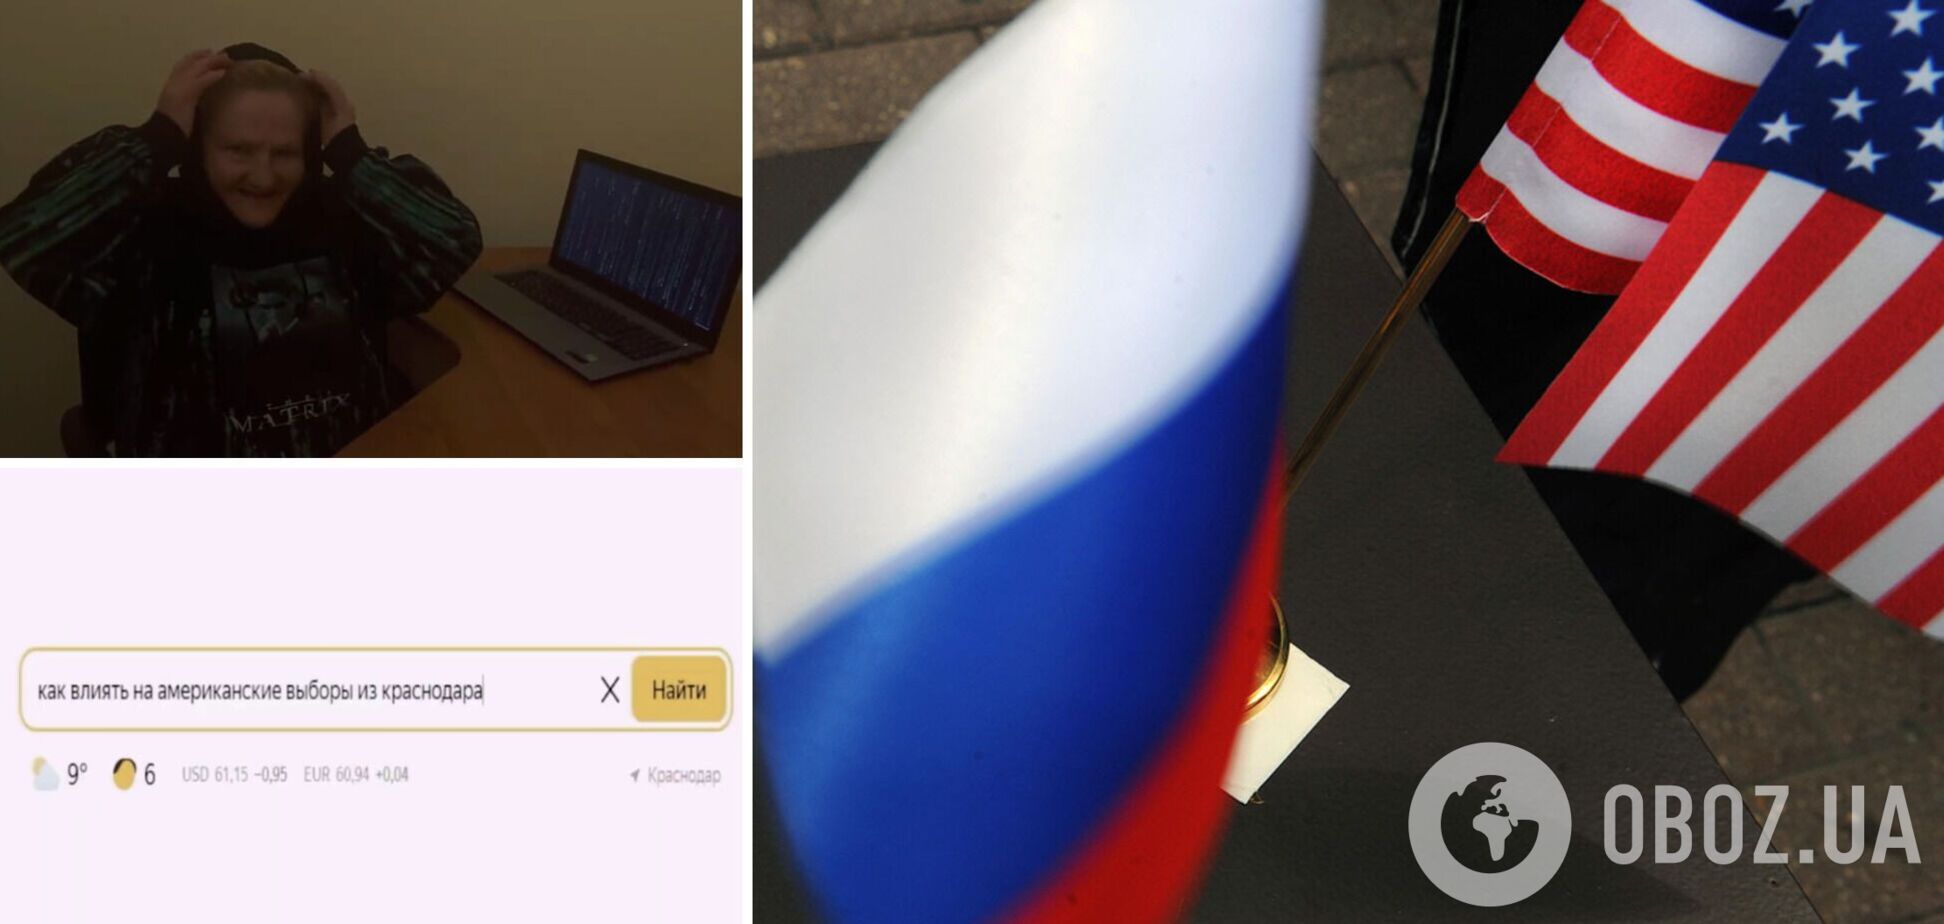 'Санітарів негайно': у мережі підняли на сміх ролик 'загонів Путіна' про 'вплив на вибори в США із Краснодара'. Відео 